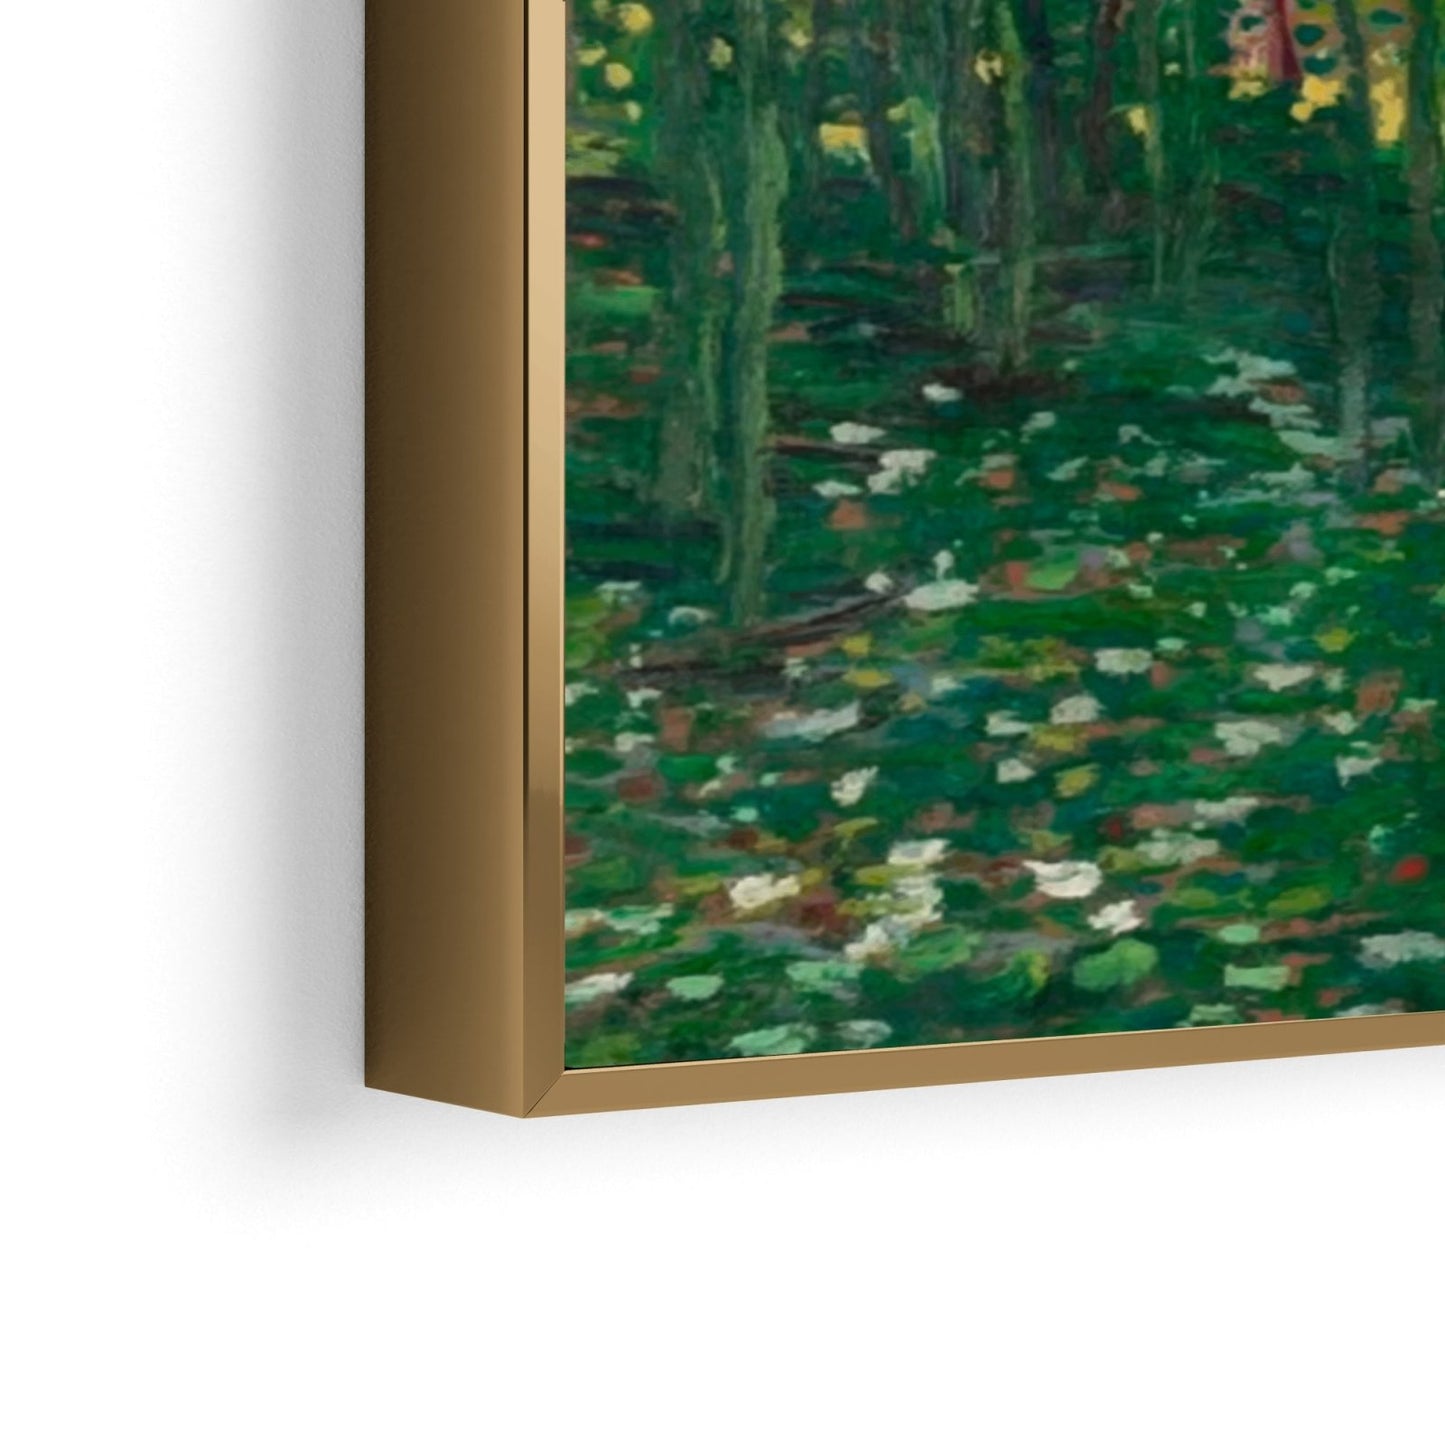 Árboles y maleza, Vincent Van Gogh